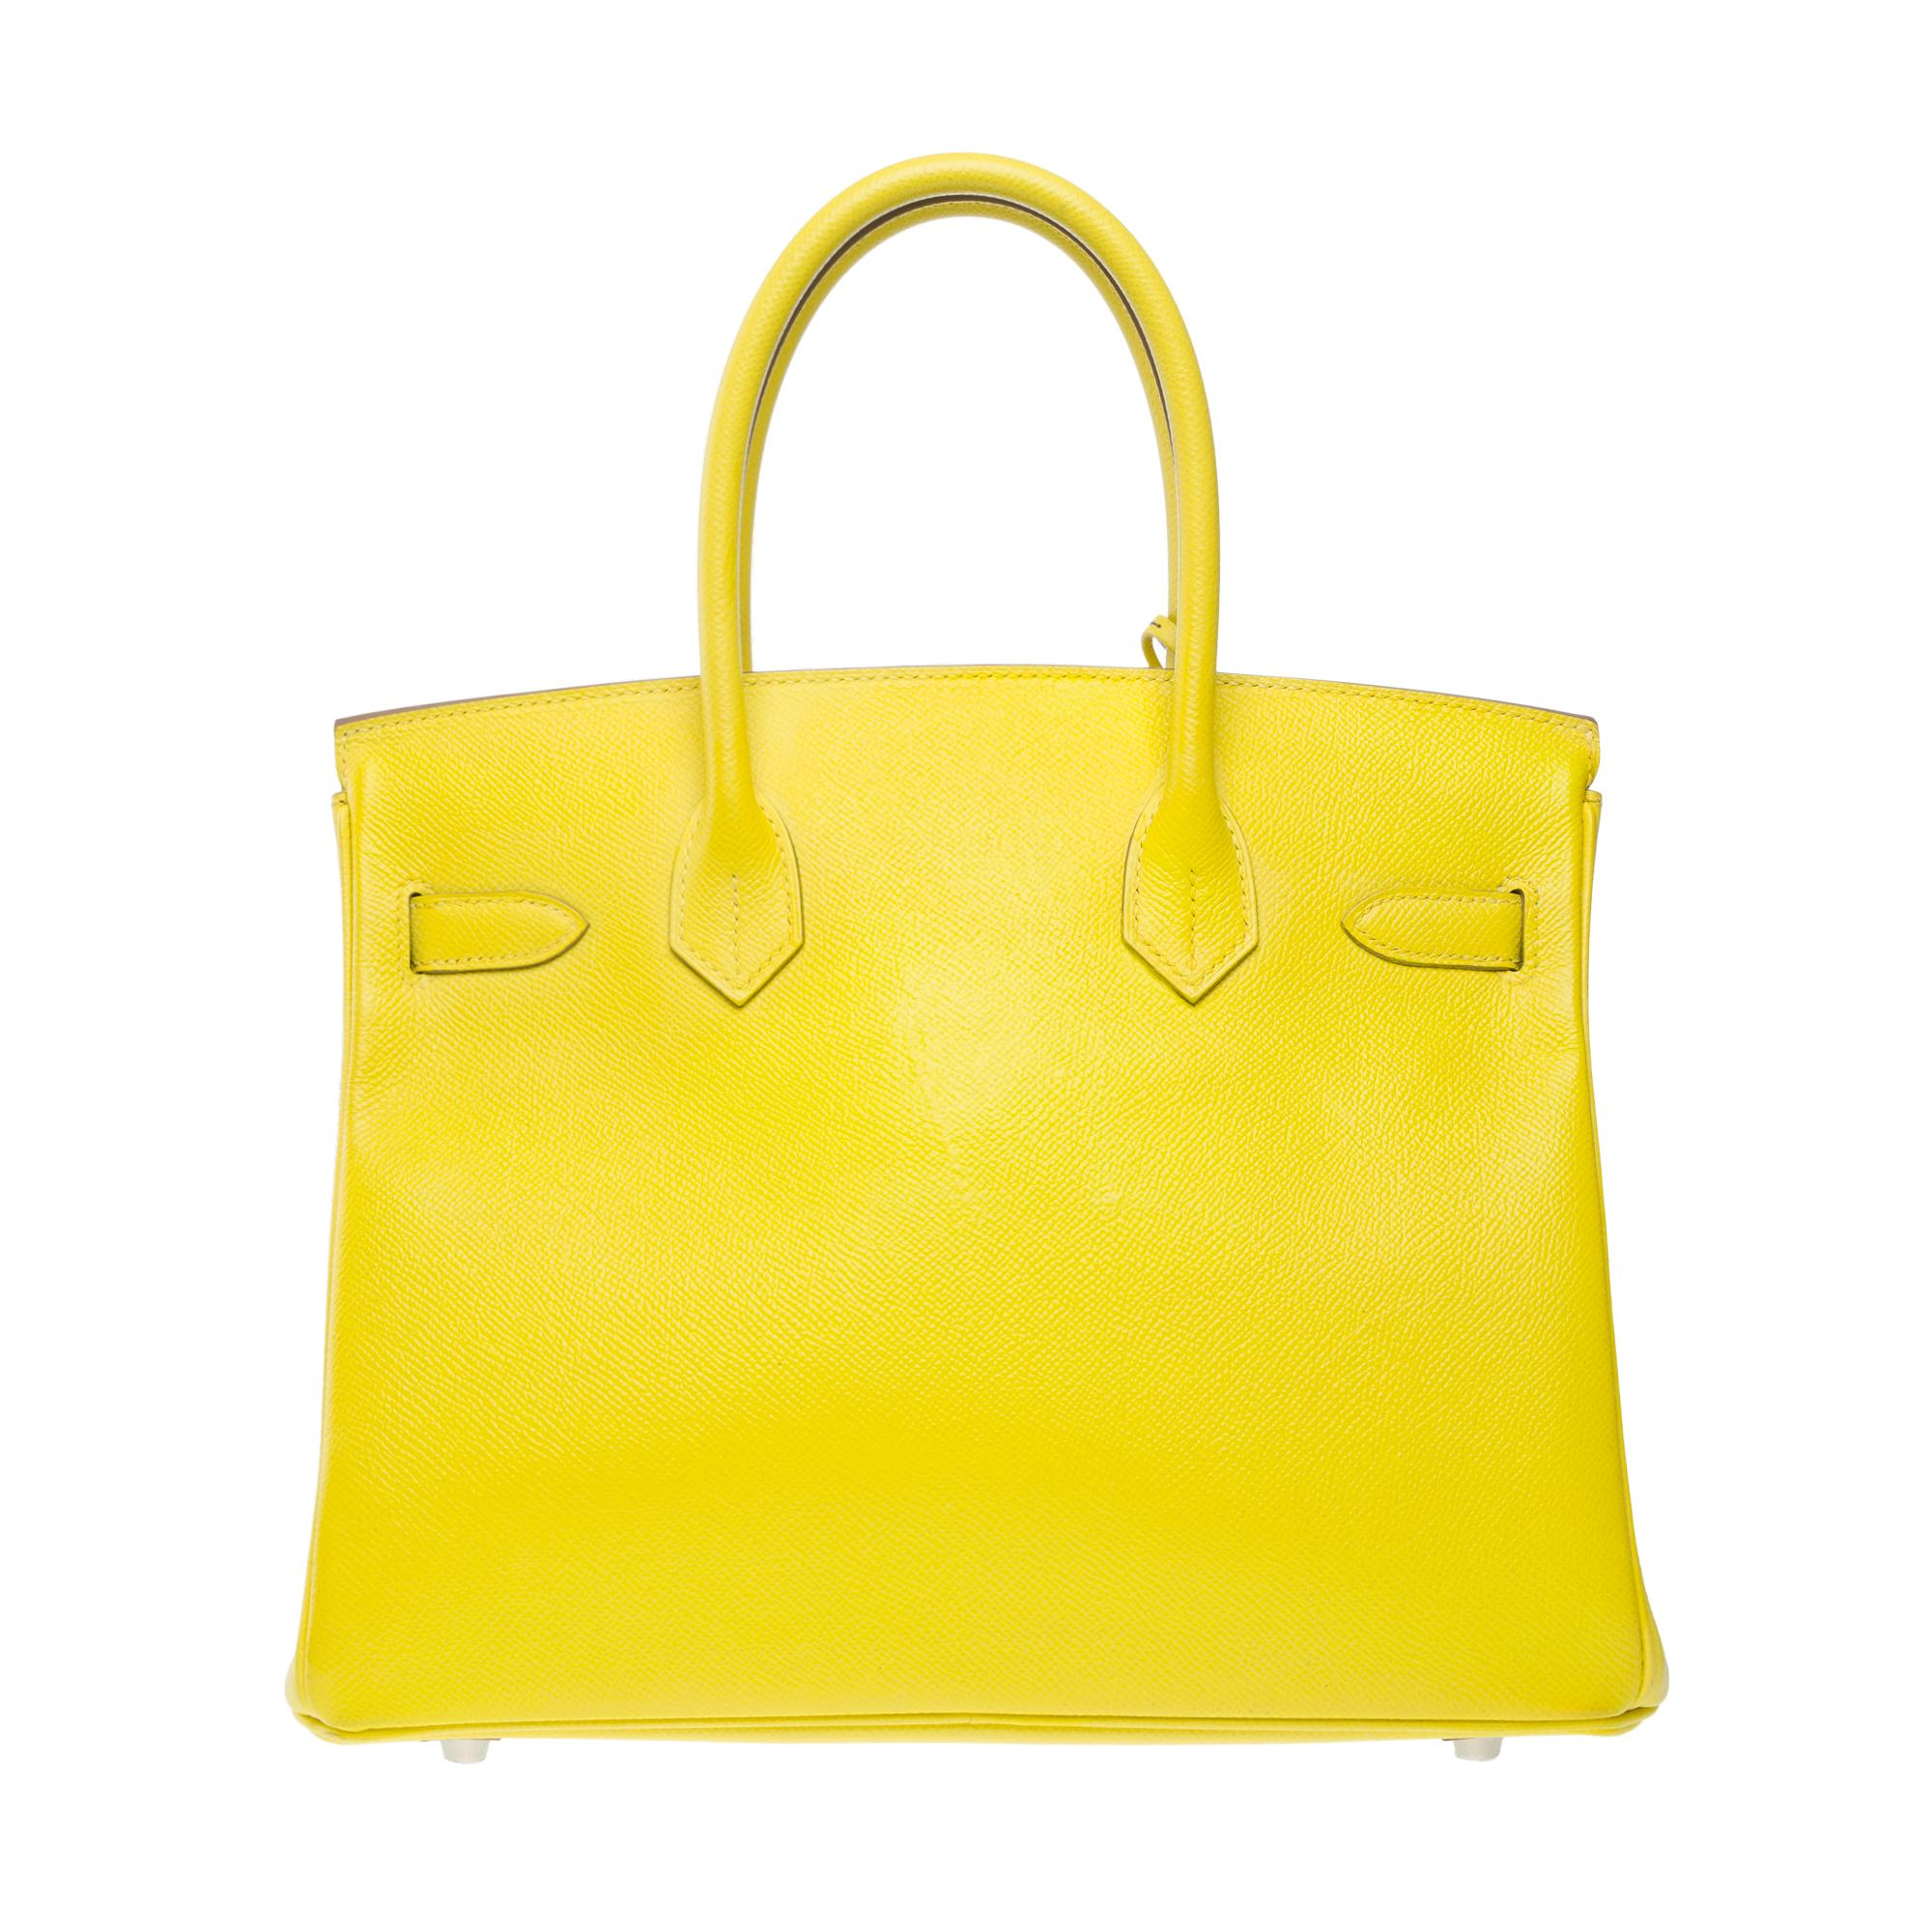 Women's Splendid New Hermes Birkin 30 handbag in Lime Epsom leather, SHW For Sale